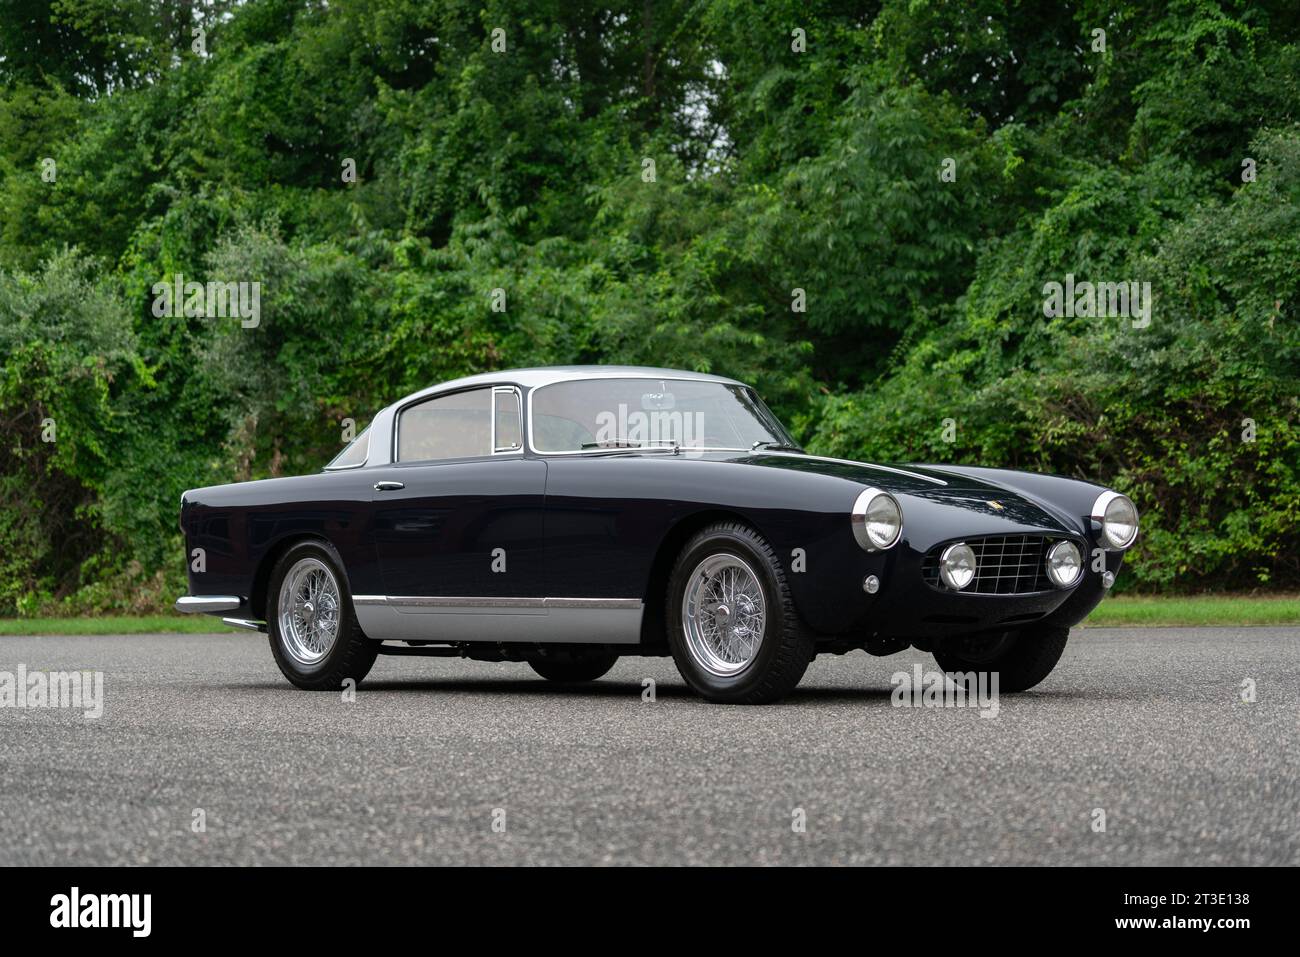 Vue avant 3/4 d'une Ferrari 250 GT coupé 1957 Banque D'Images